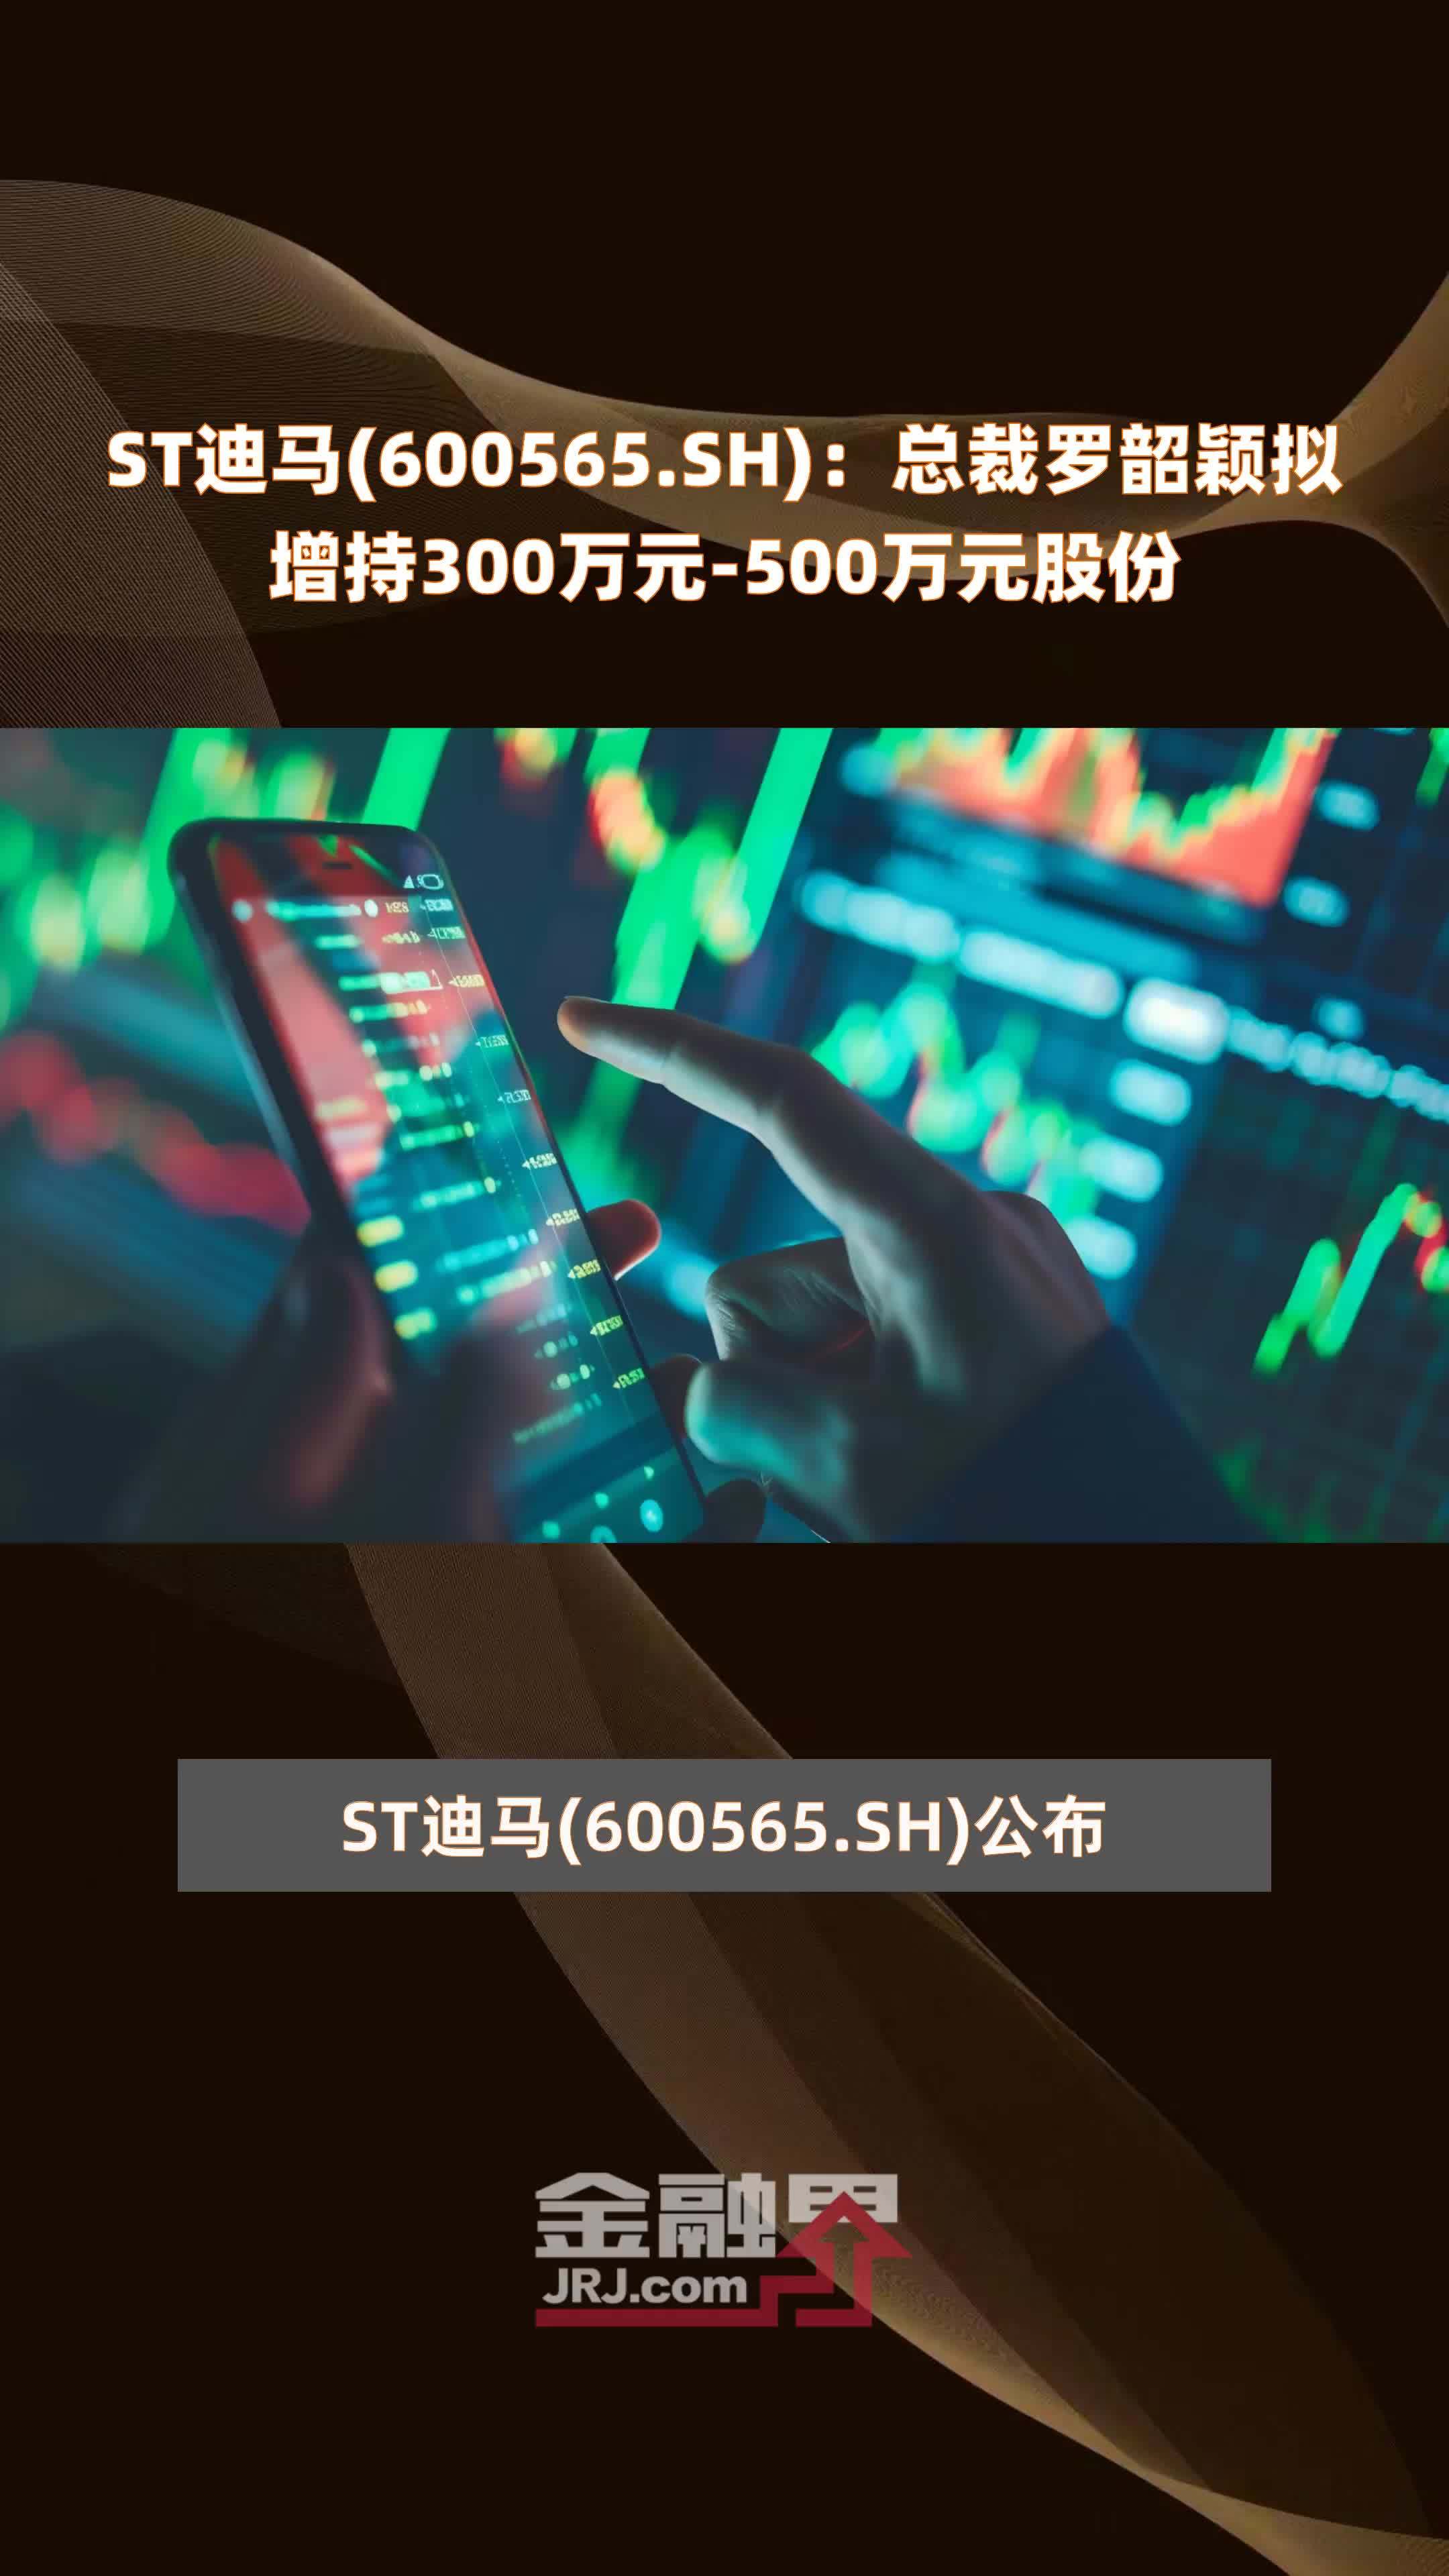 ST迪马(600565.SH)：总裁罗韶颖拟增持300万元-500万元股份 |快报